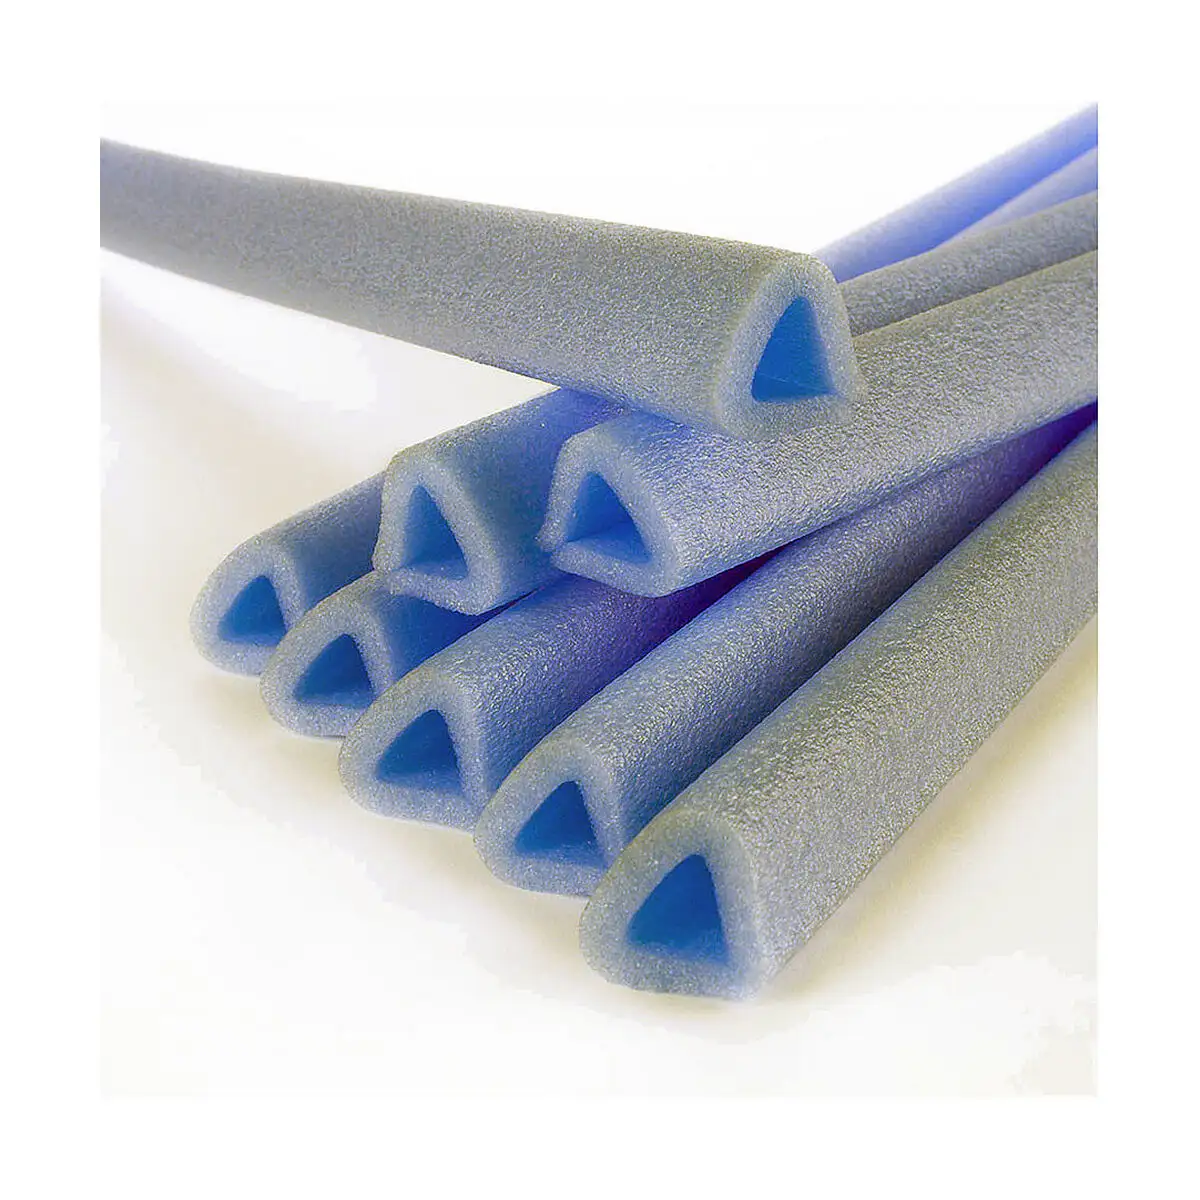 Corniere pour emballage fun go u20 bleu polyethylene 1 m 2 unites _4008. DIAYTAR SENEGAL - Où Chaque Détail Compte. Naviguez à travers notre gamme variée et choisissez des articles qui ajoutent une touche spéciale à votre quotidien, toujours avec qualité et style.